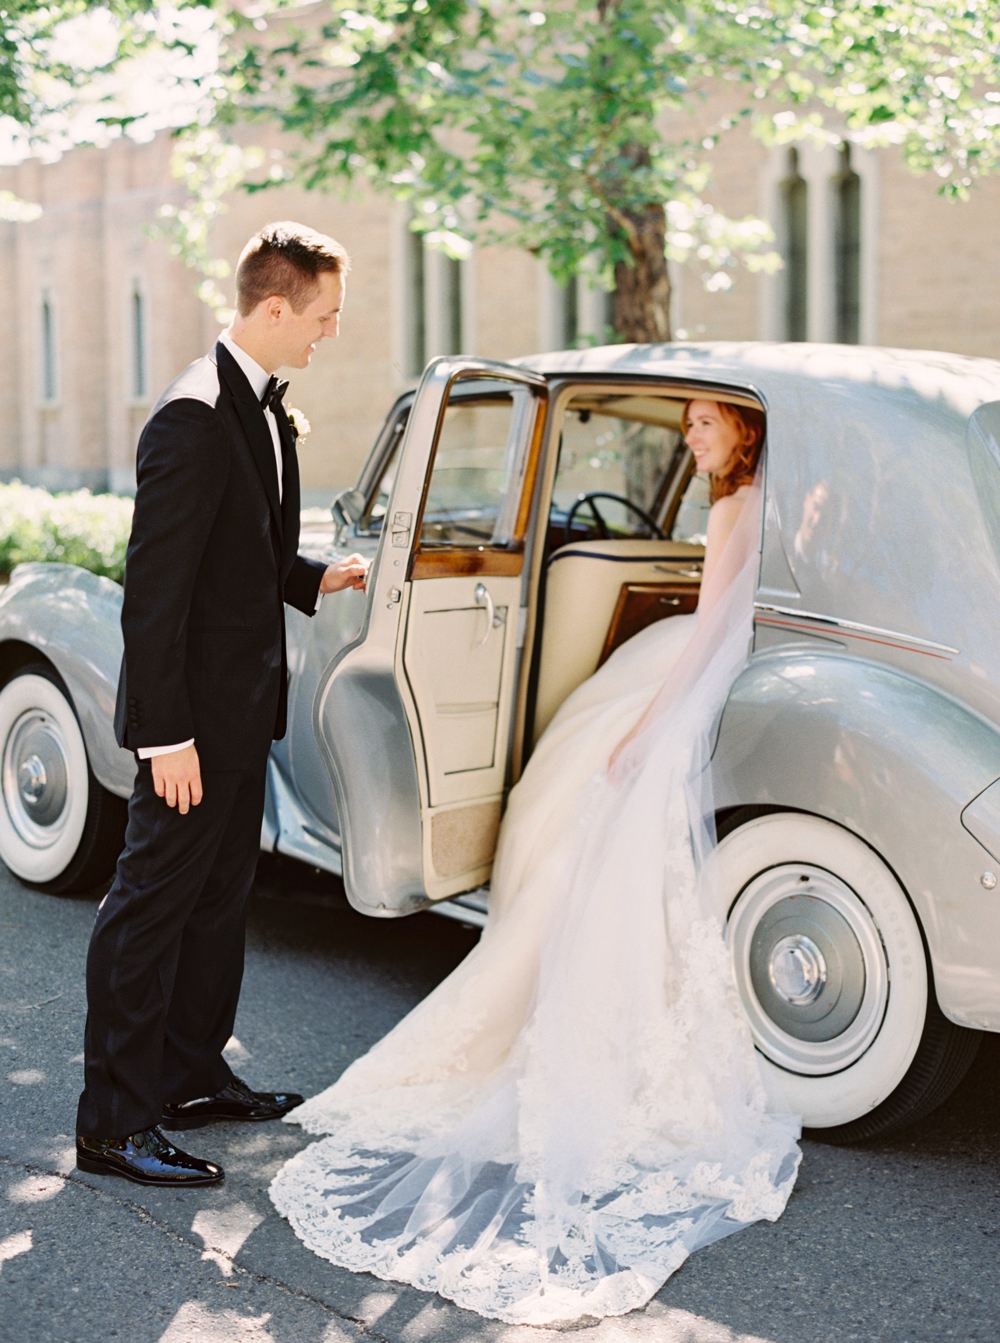 Calgary Wedding Photographer | Canmore Wedding Photographers | Banff Wedding Photography | Fairmont Palliser | Calgary Church | Blue bridesmaids | Vintage Car